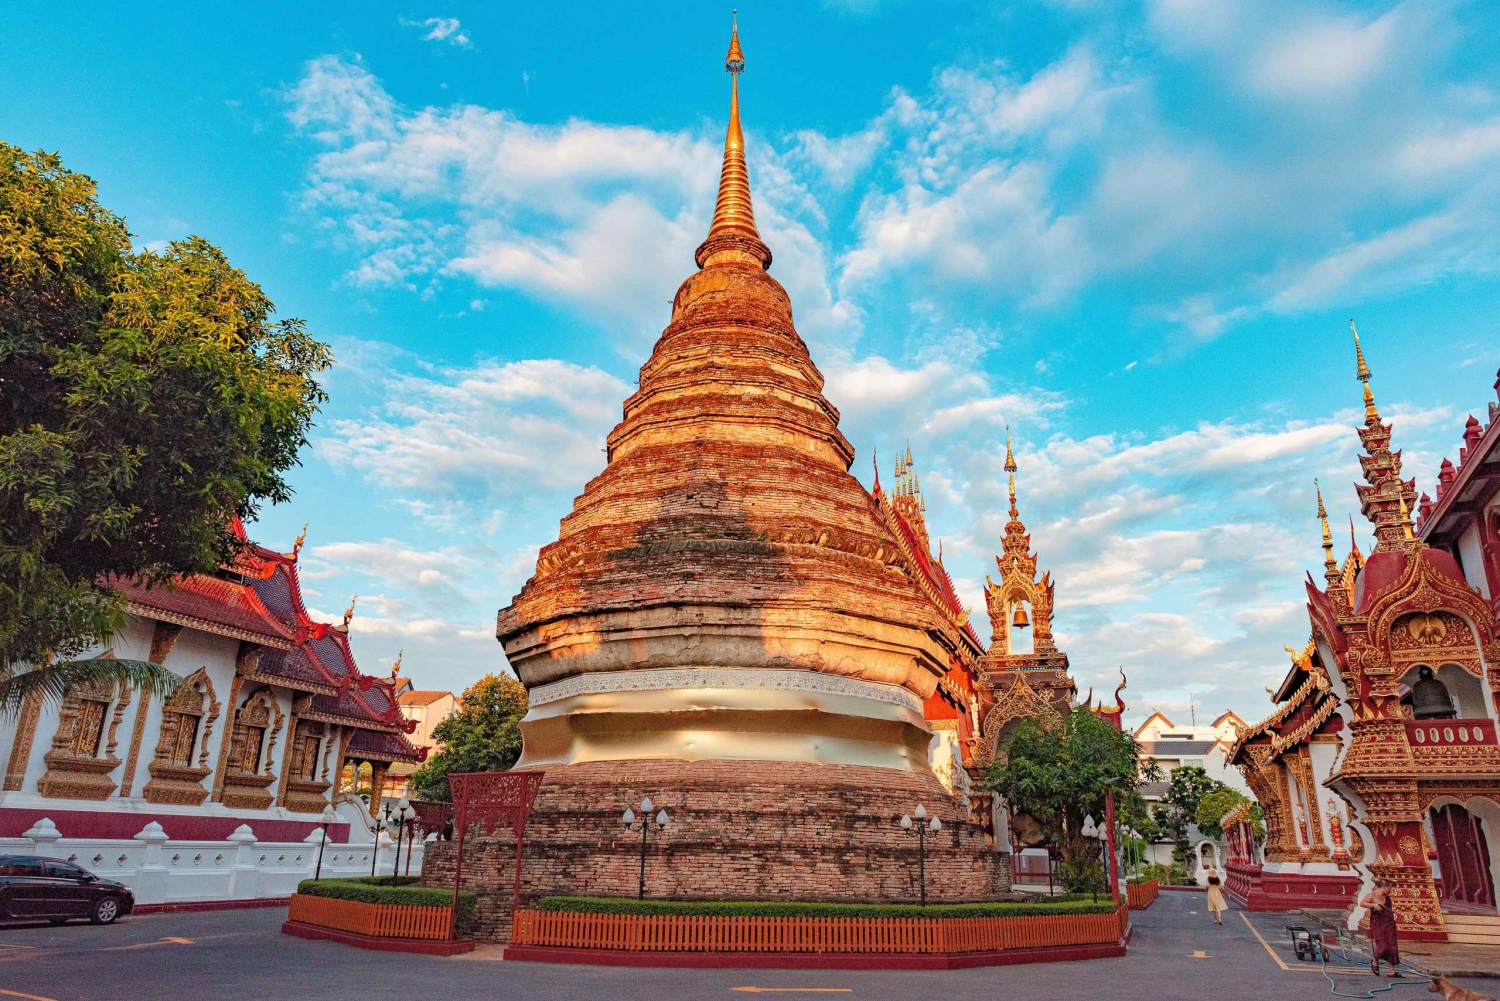 Bangkokissa: City Highlights, Temple, and Market Walking Tour